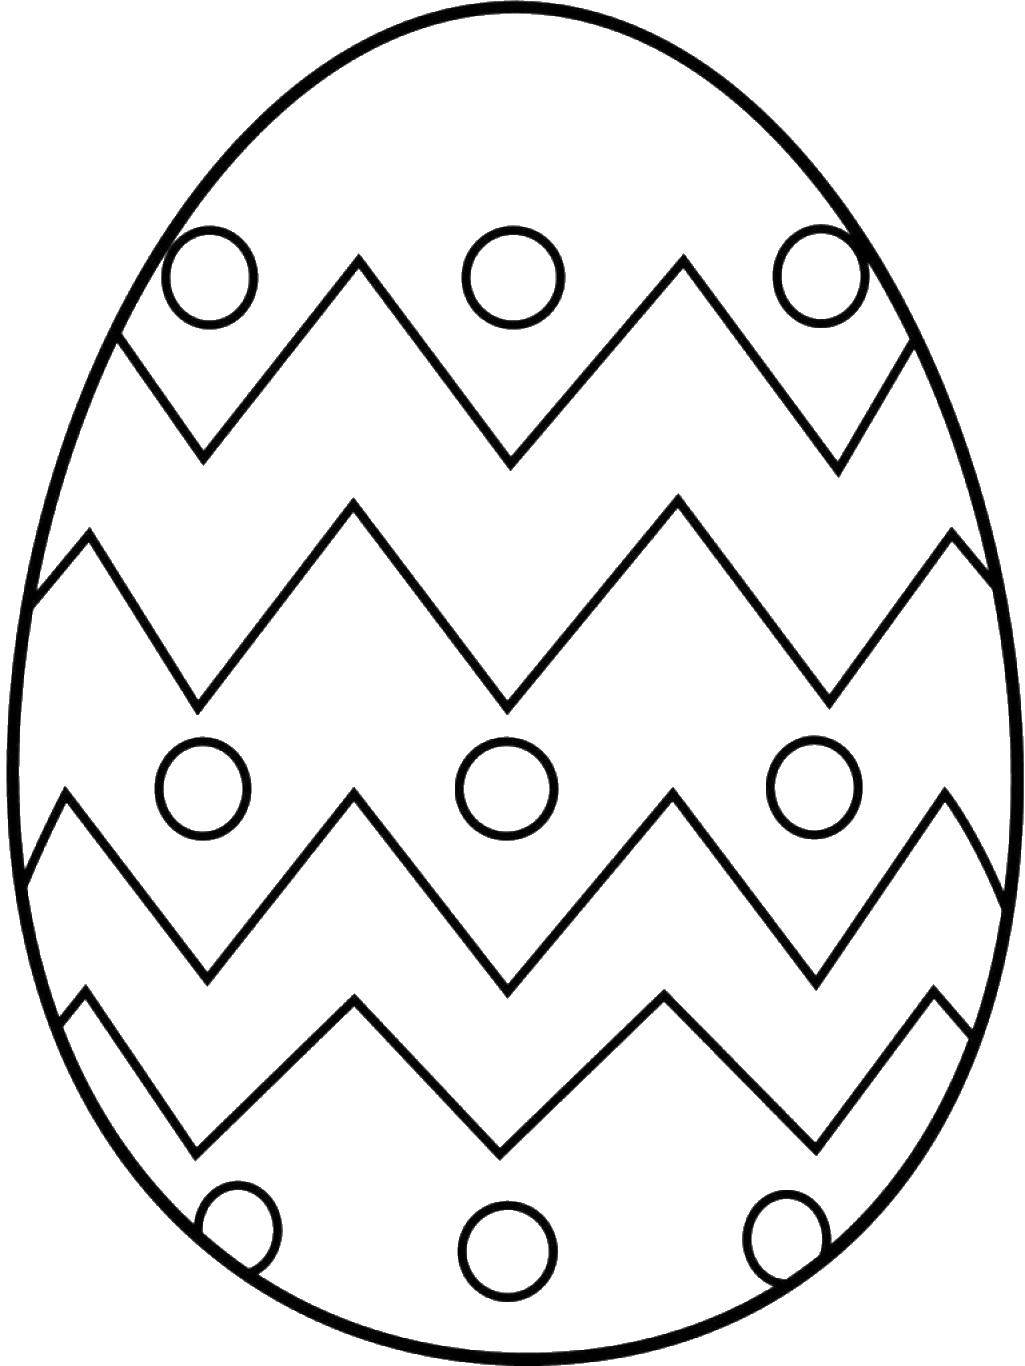 Раскраски яиц на Пасху с узорами для детей (яйца, узоры)